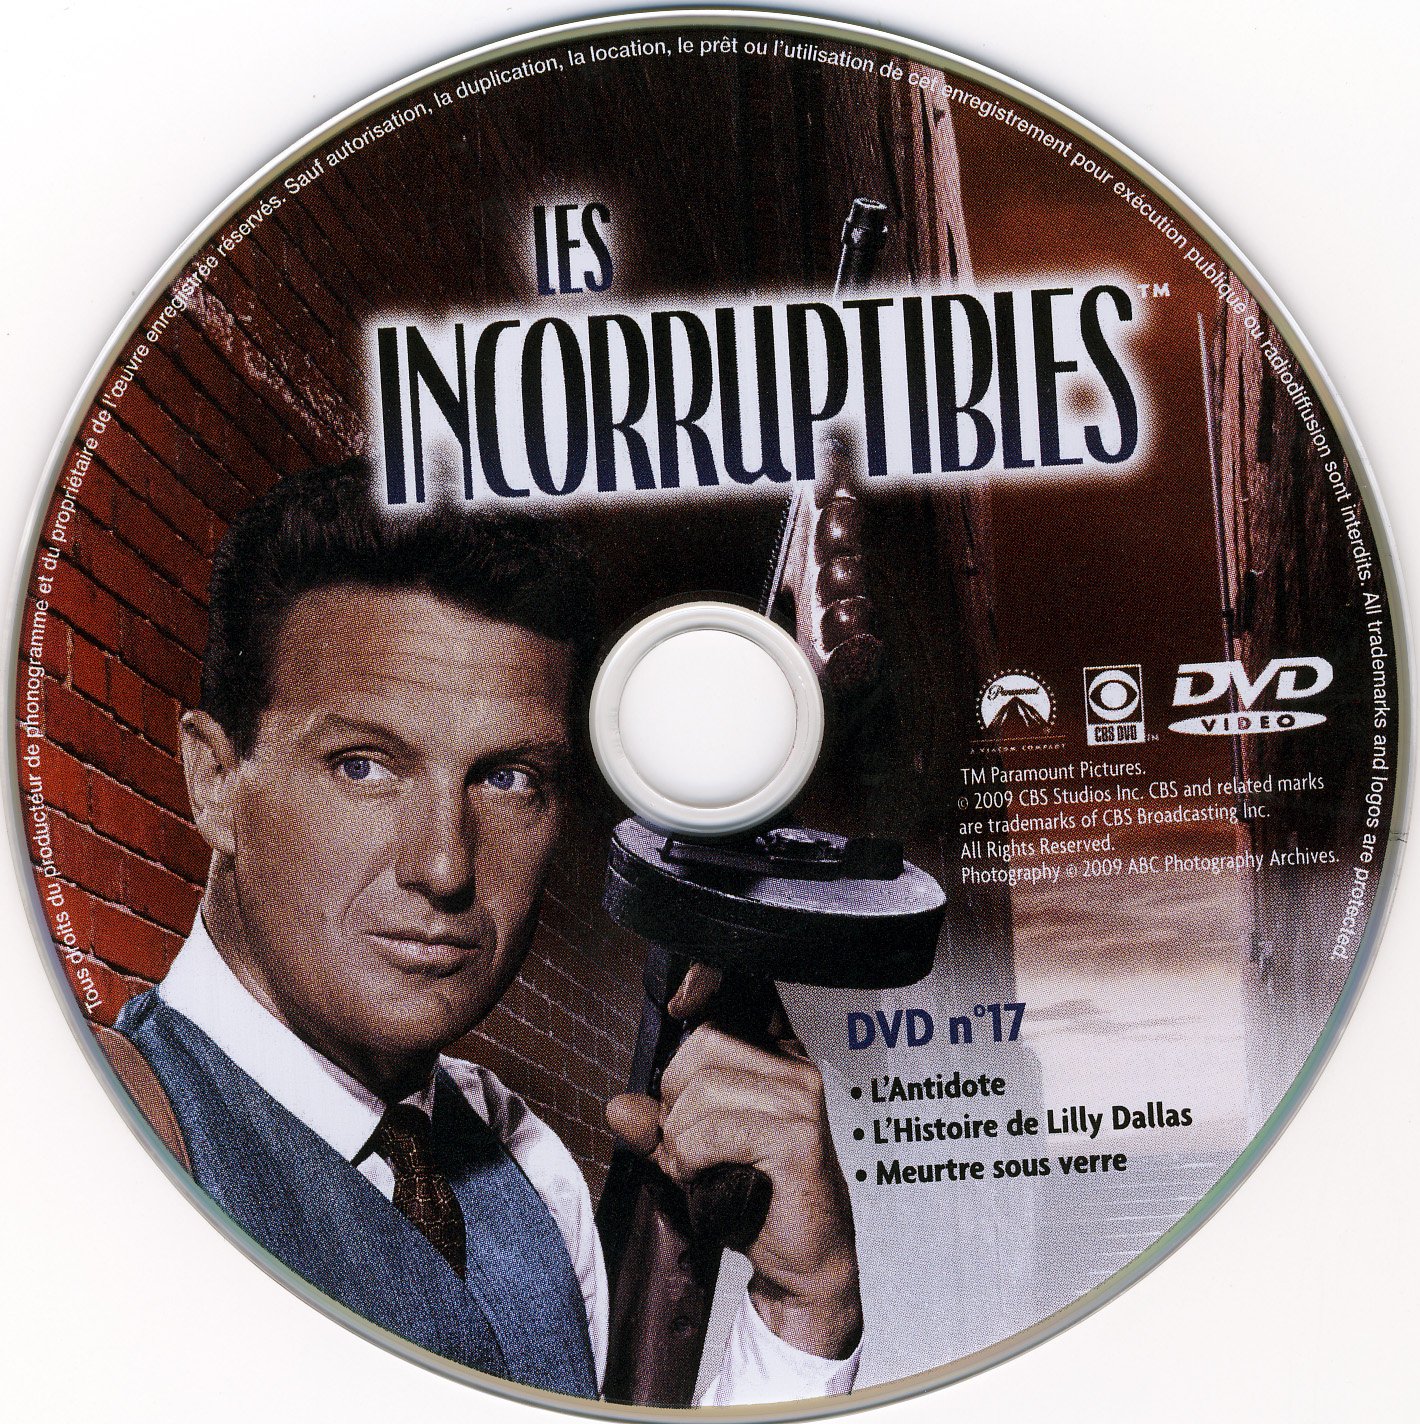 Les incorruptibles intgrale DVD 17